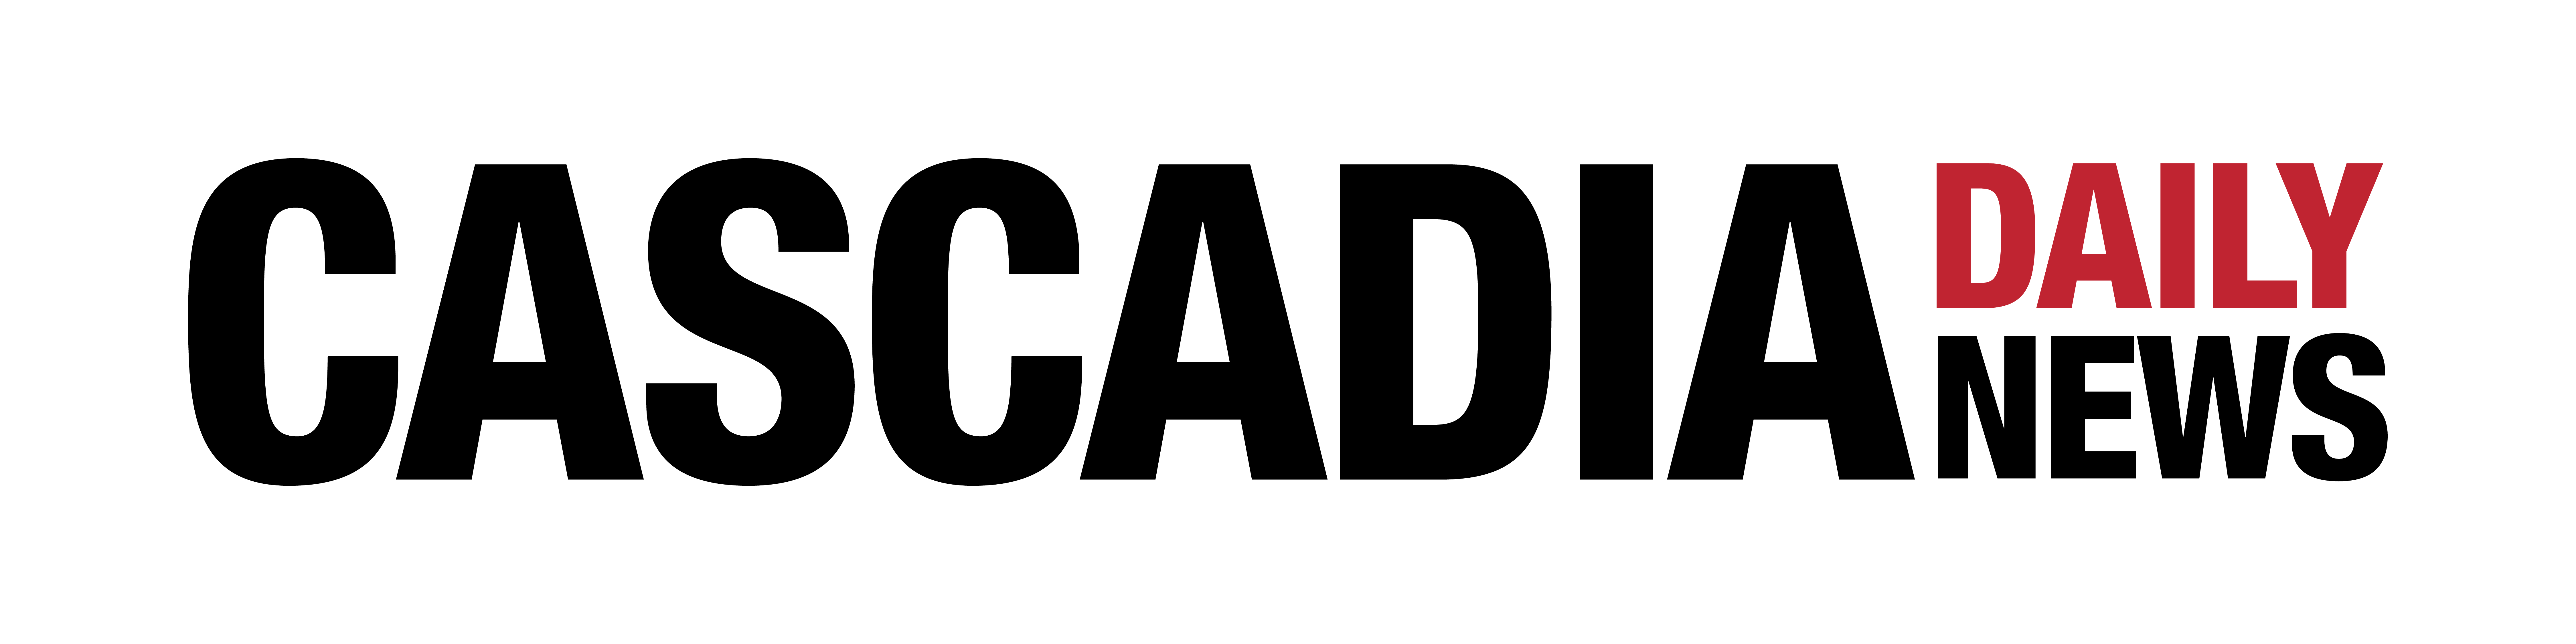 Cascadia Daily News logo